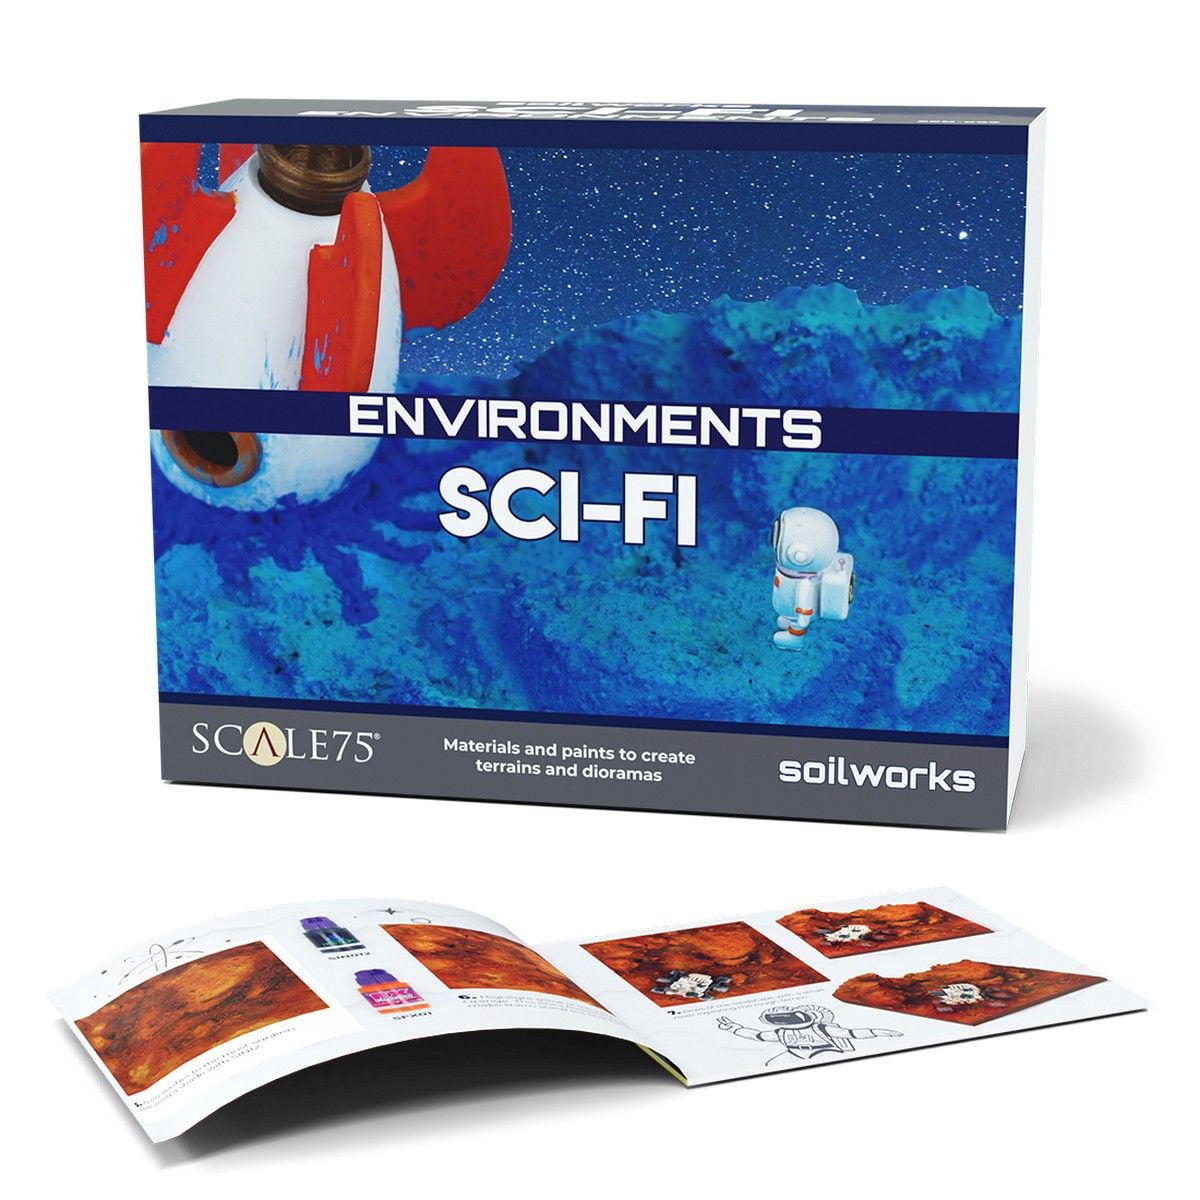 Soilworks: Environments - Sci-Fi